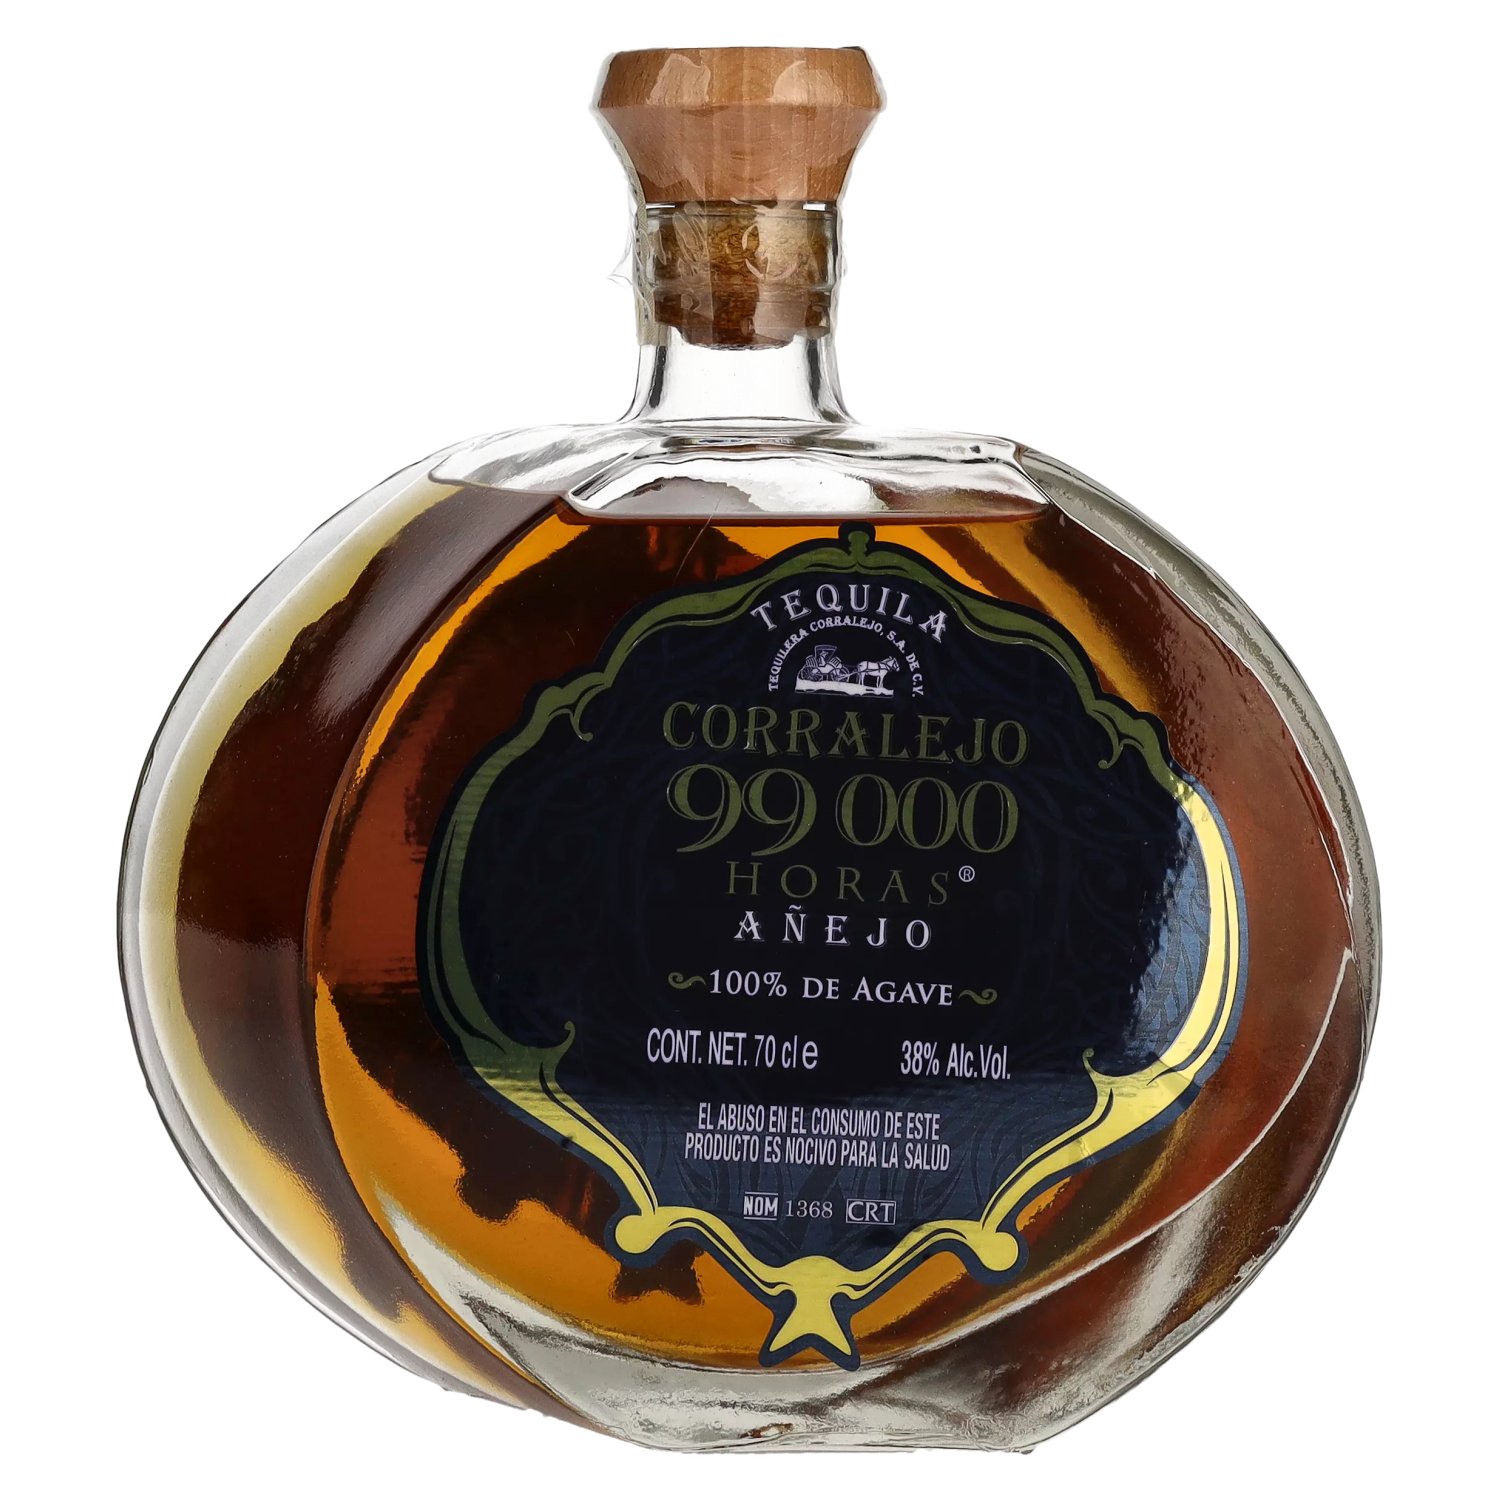 100% de Corralejo AÑEJO Agave 0,7l 38% 99,000 HORAS Tequila Vol.